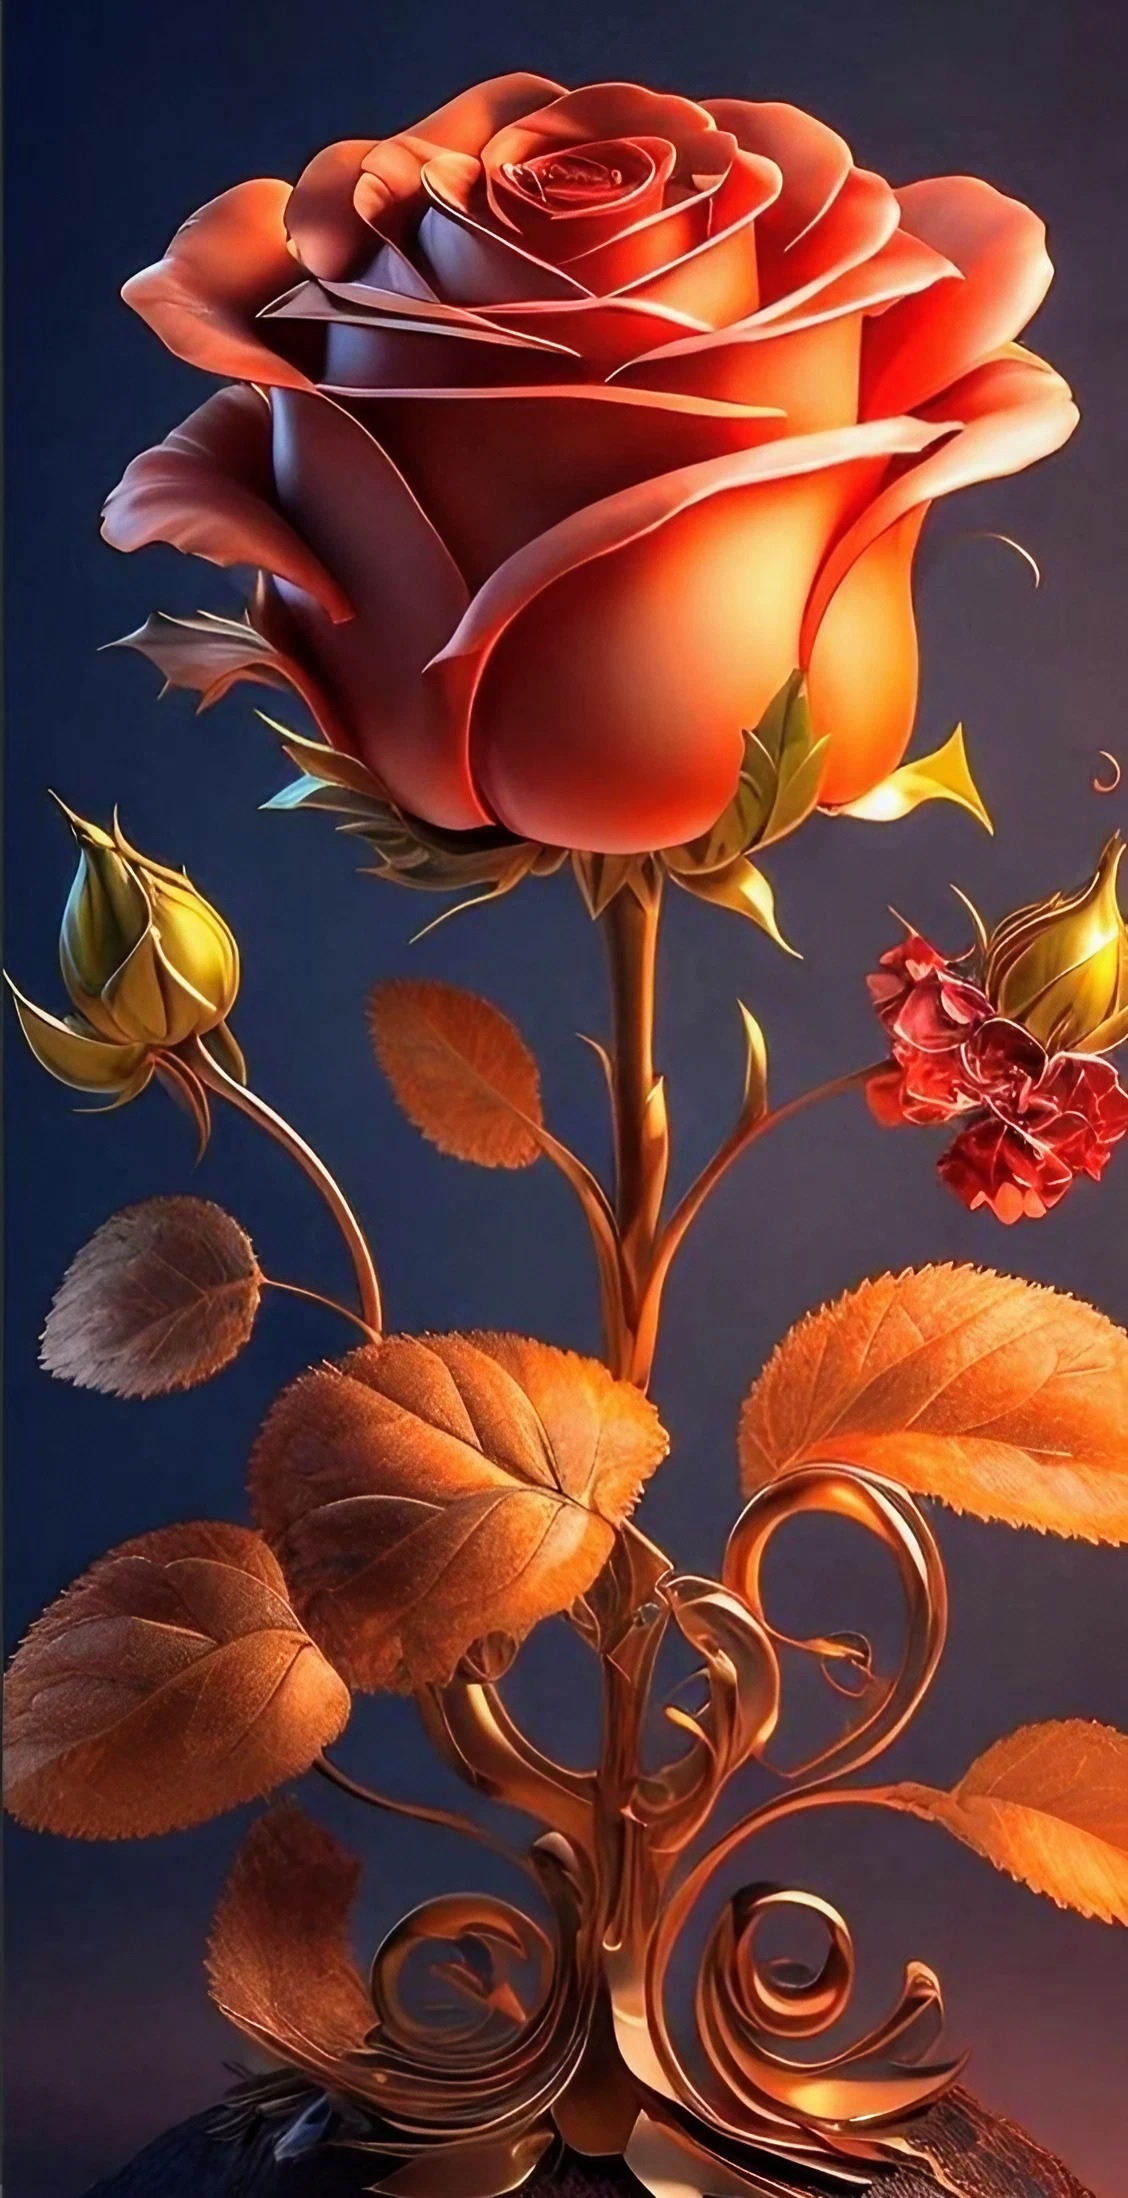 Gulab Ke Phool Wala - Orange Rose